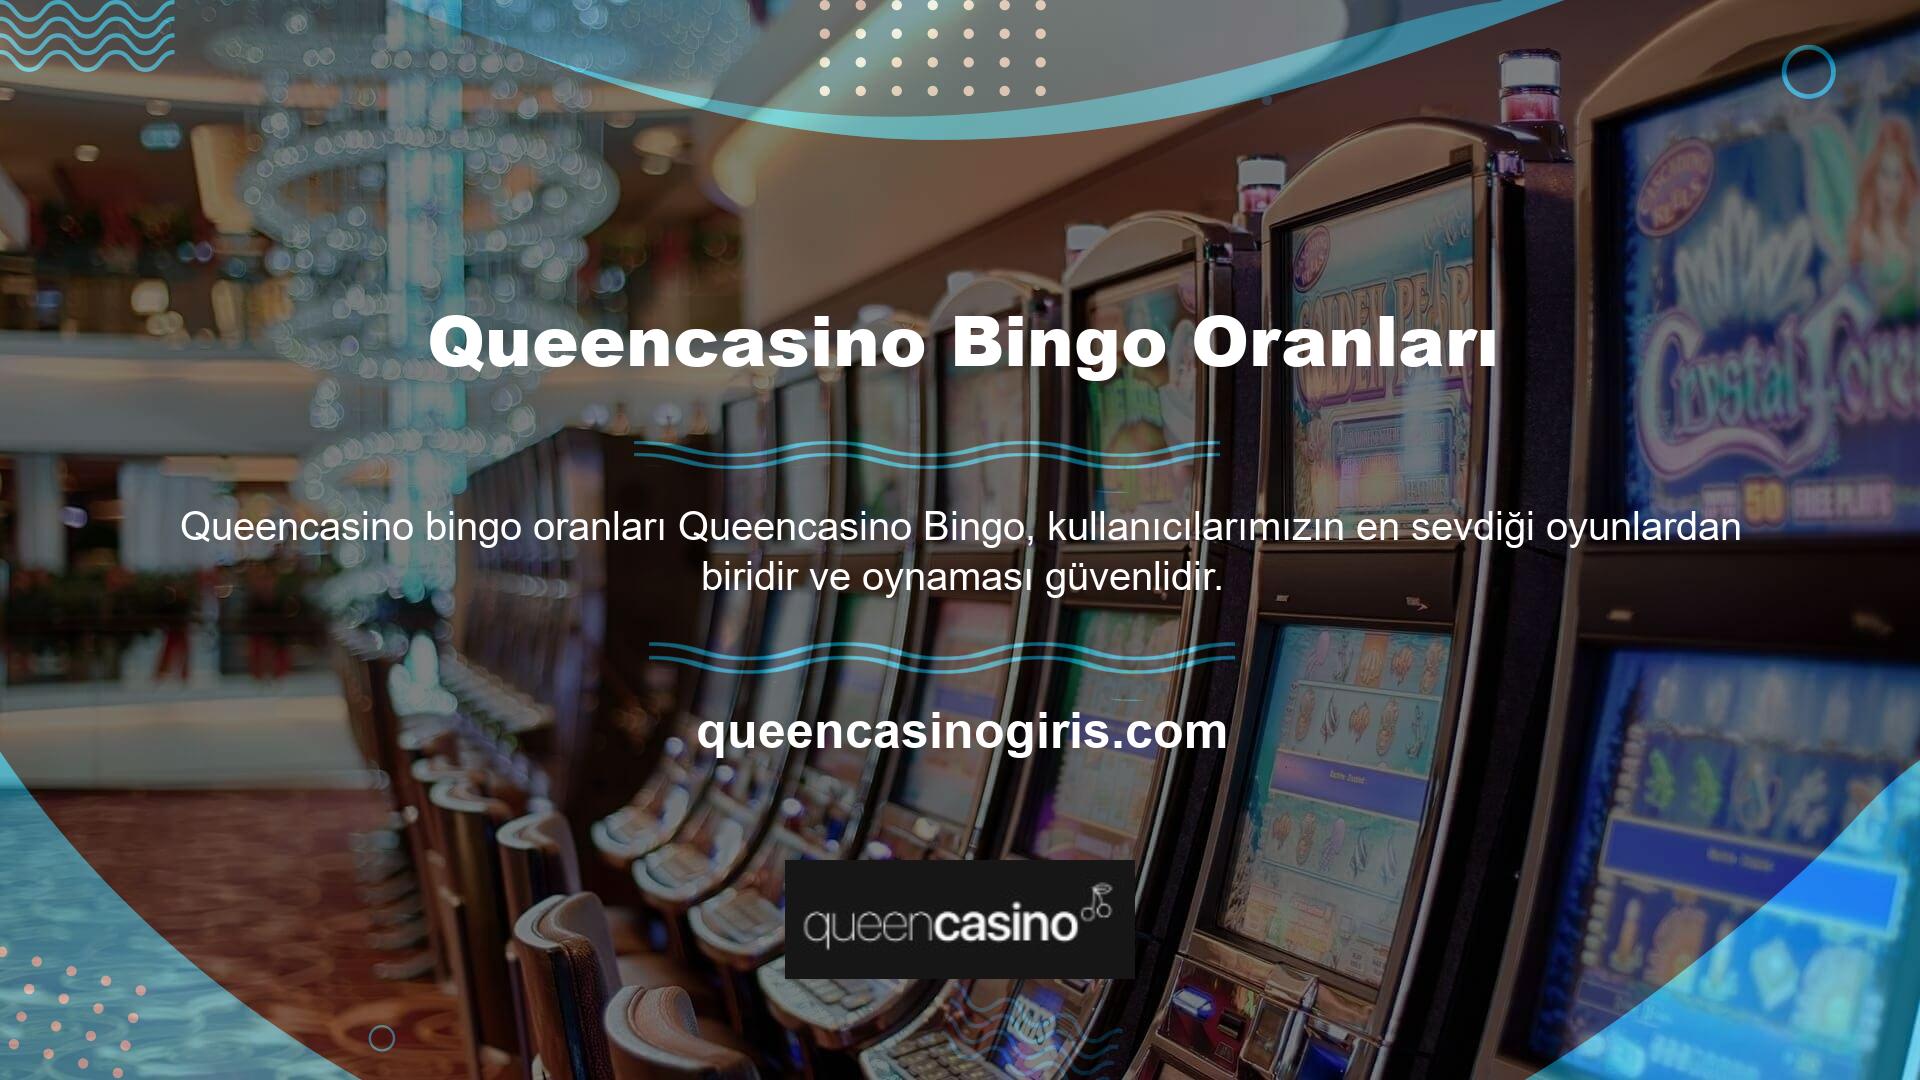 Bingo oyunlarına erişmek için "Queencasino Bingo Odds Stakes" bağlantısına tıklayın